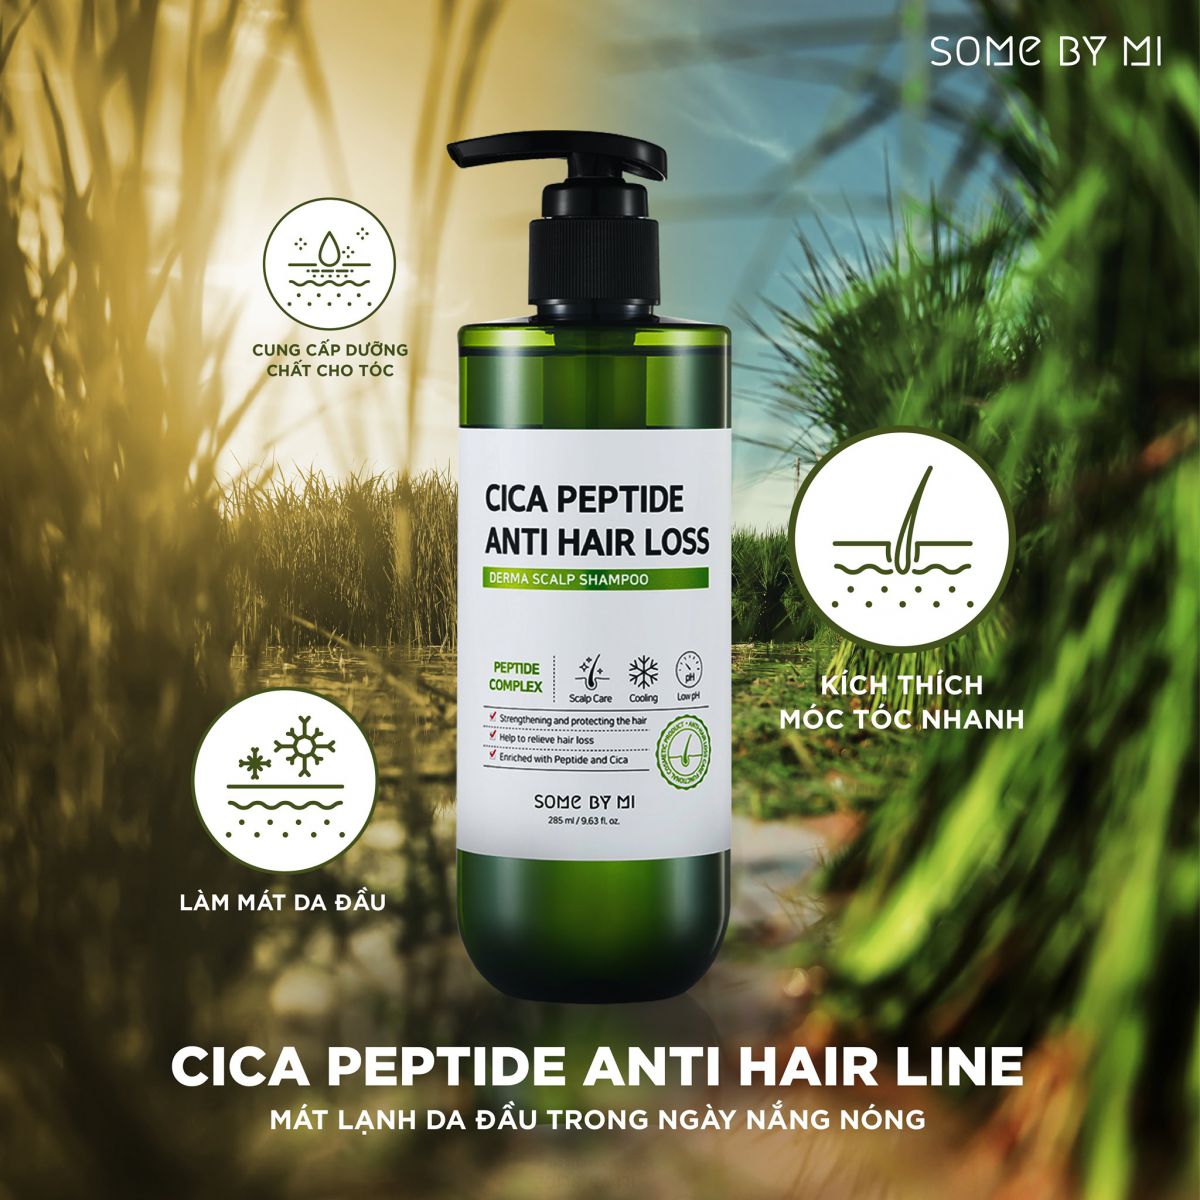 Some By Mi Cica Peptide Anti Hair Loss Derma Scalp Shampoo cung cấp dưỡng chất, làm mát da đầu